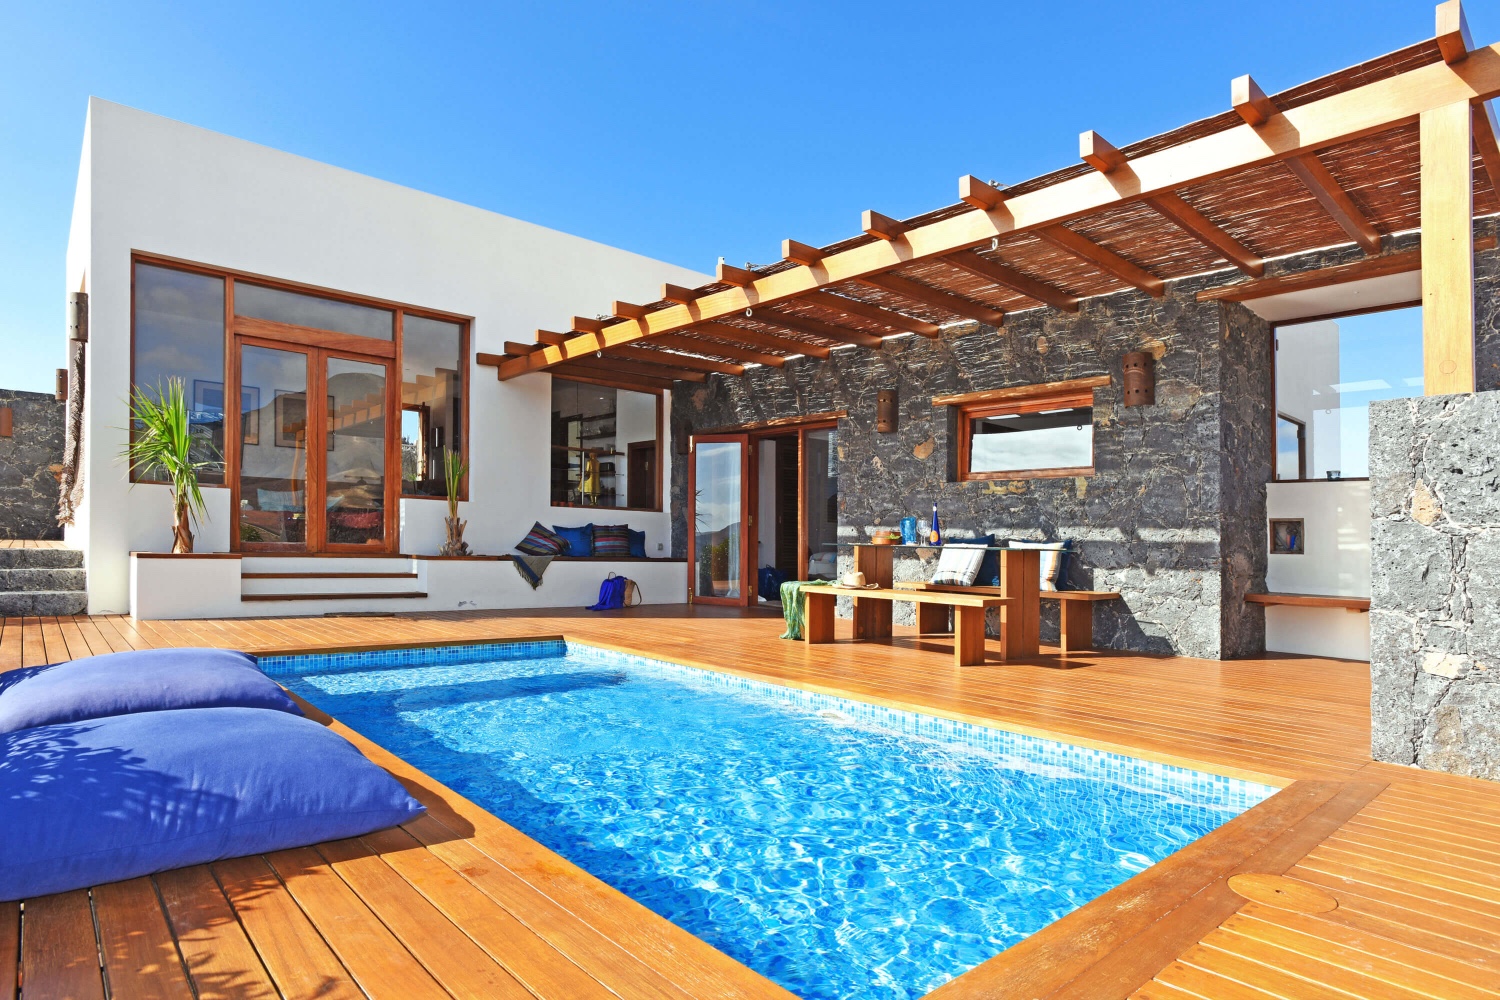 Élégant villa de deux chambres avec vue sur la piscine et de magnifiques privés de paysage volcanique près de la plage